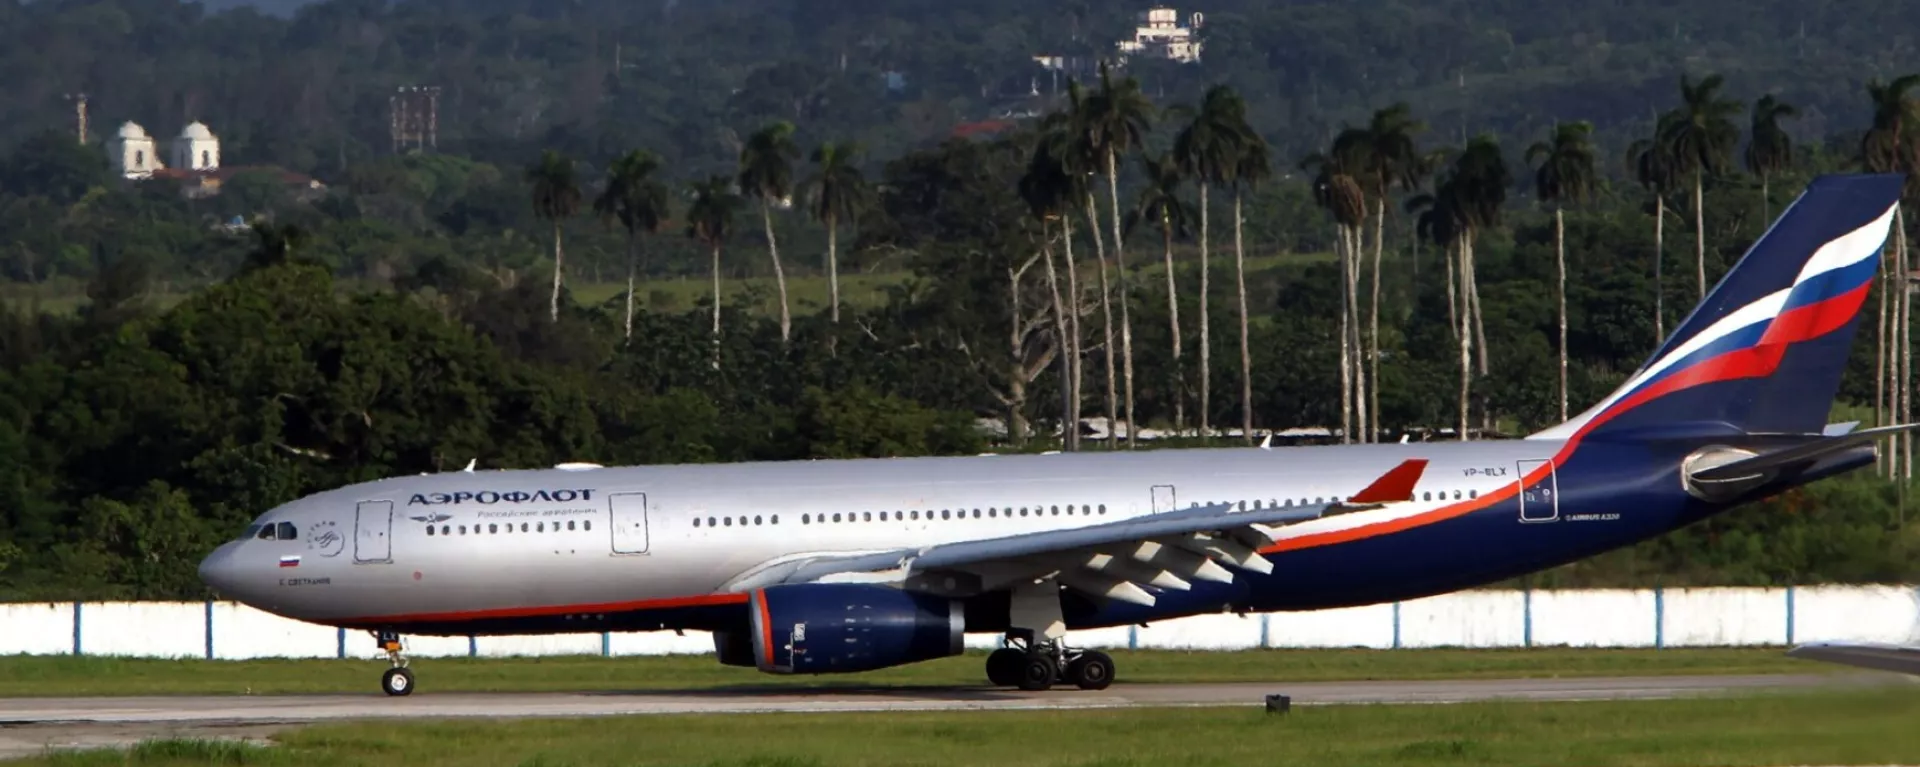 A passenger aircraft from Russia's national airline Aeroflot lands at Cuba's Havana Jose Marti International Airport in 2013. - Sputnik International, 1920, 10.04.2023